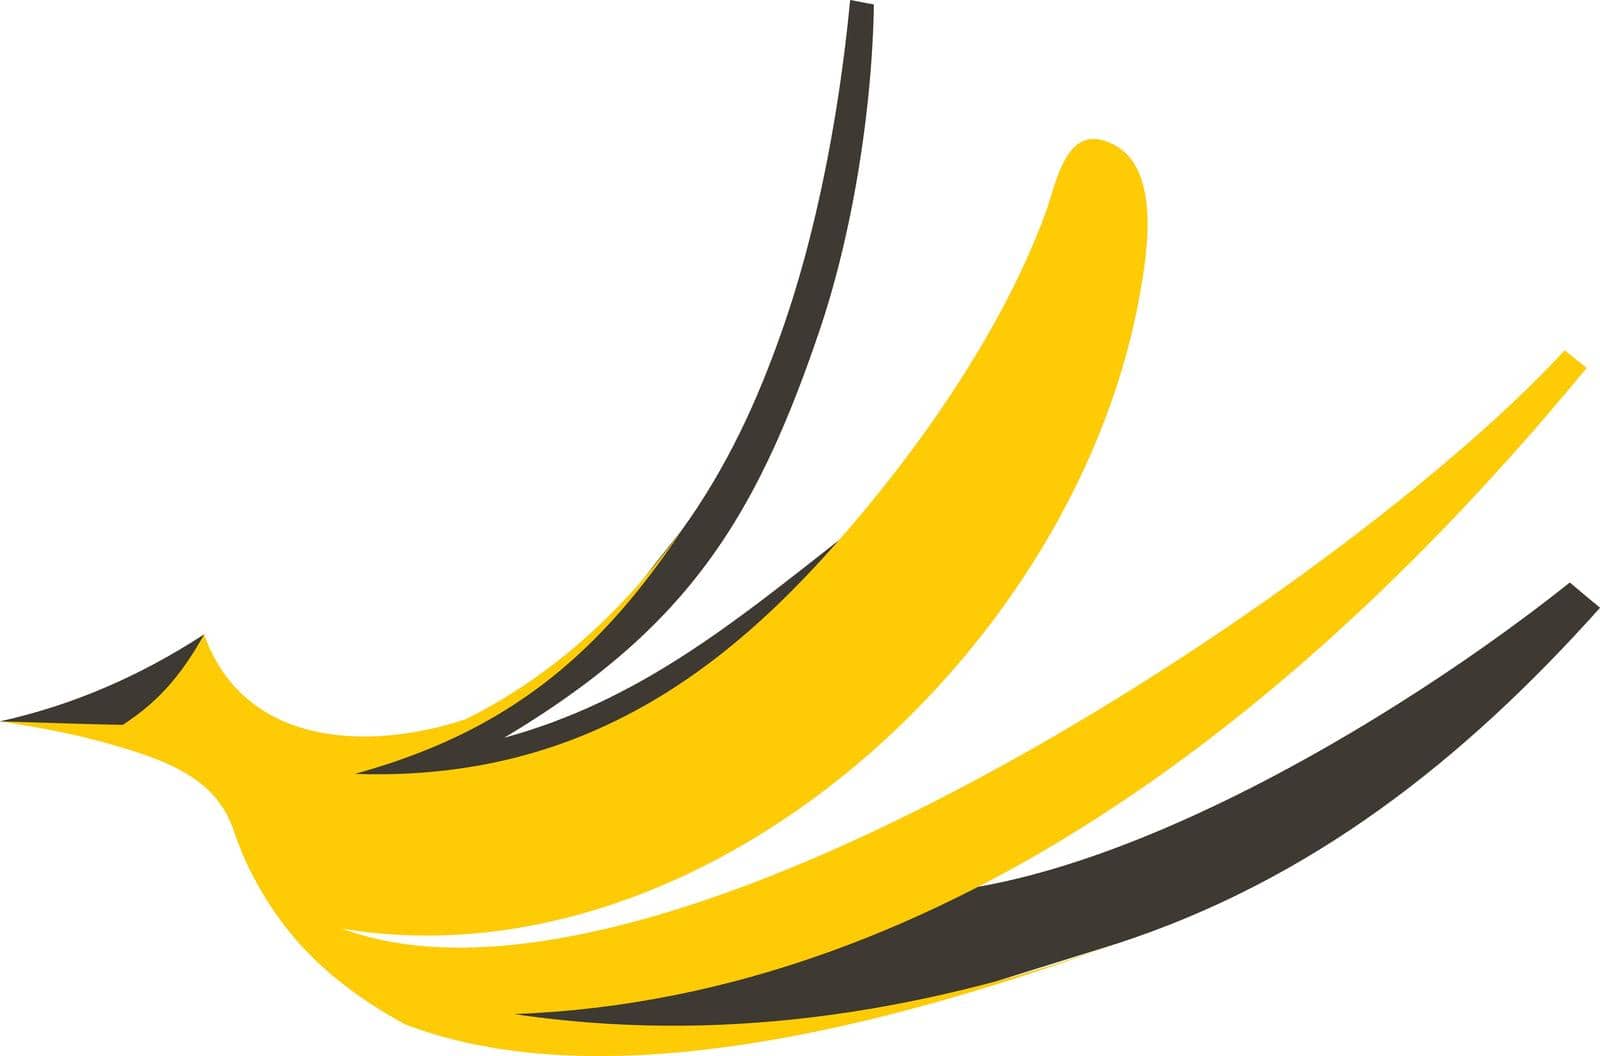 Banana peel icon in flat style isolated on white background. Fruit symbol